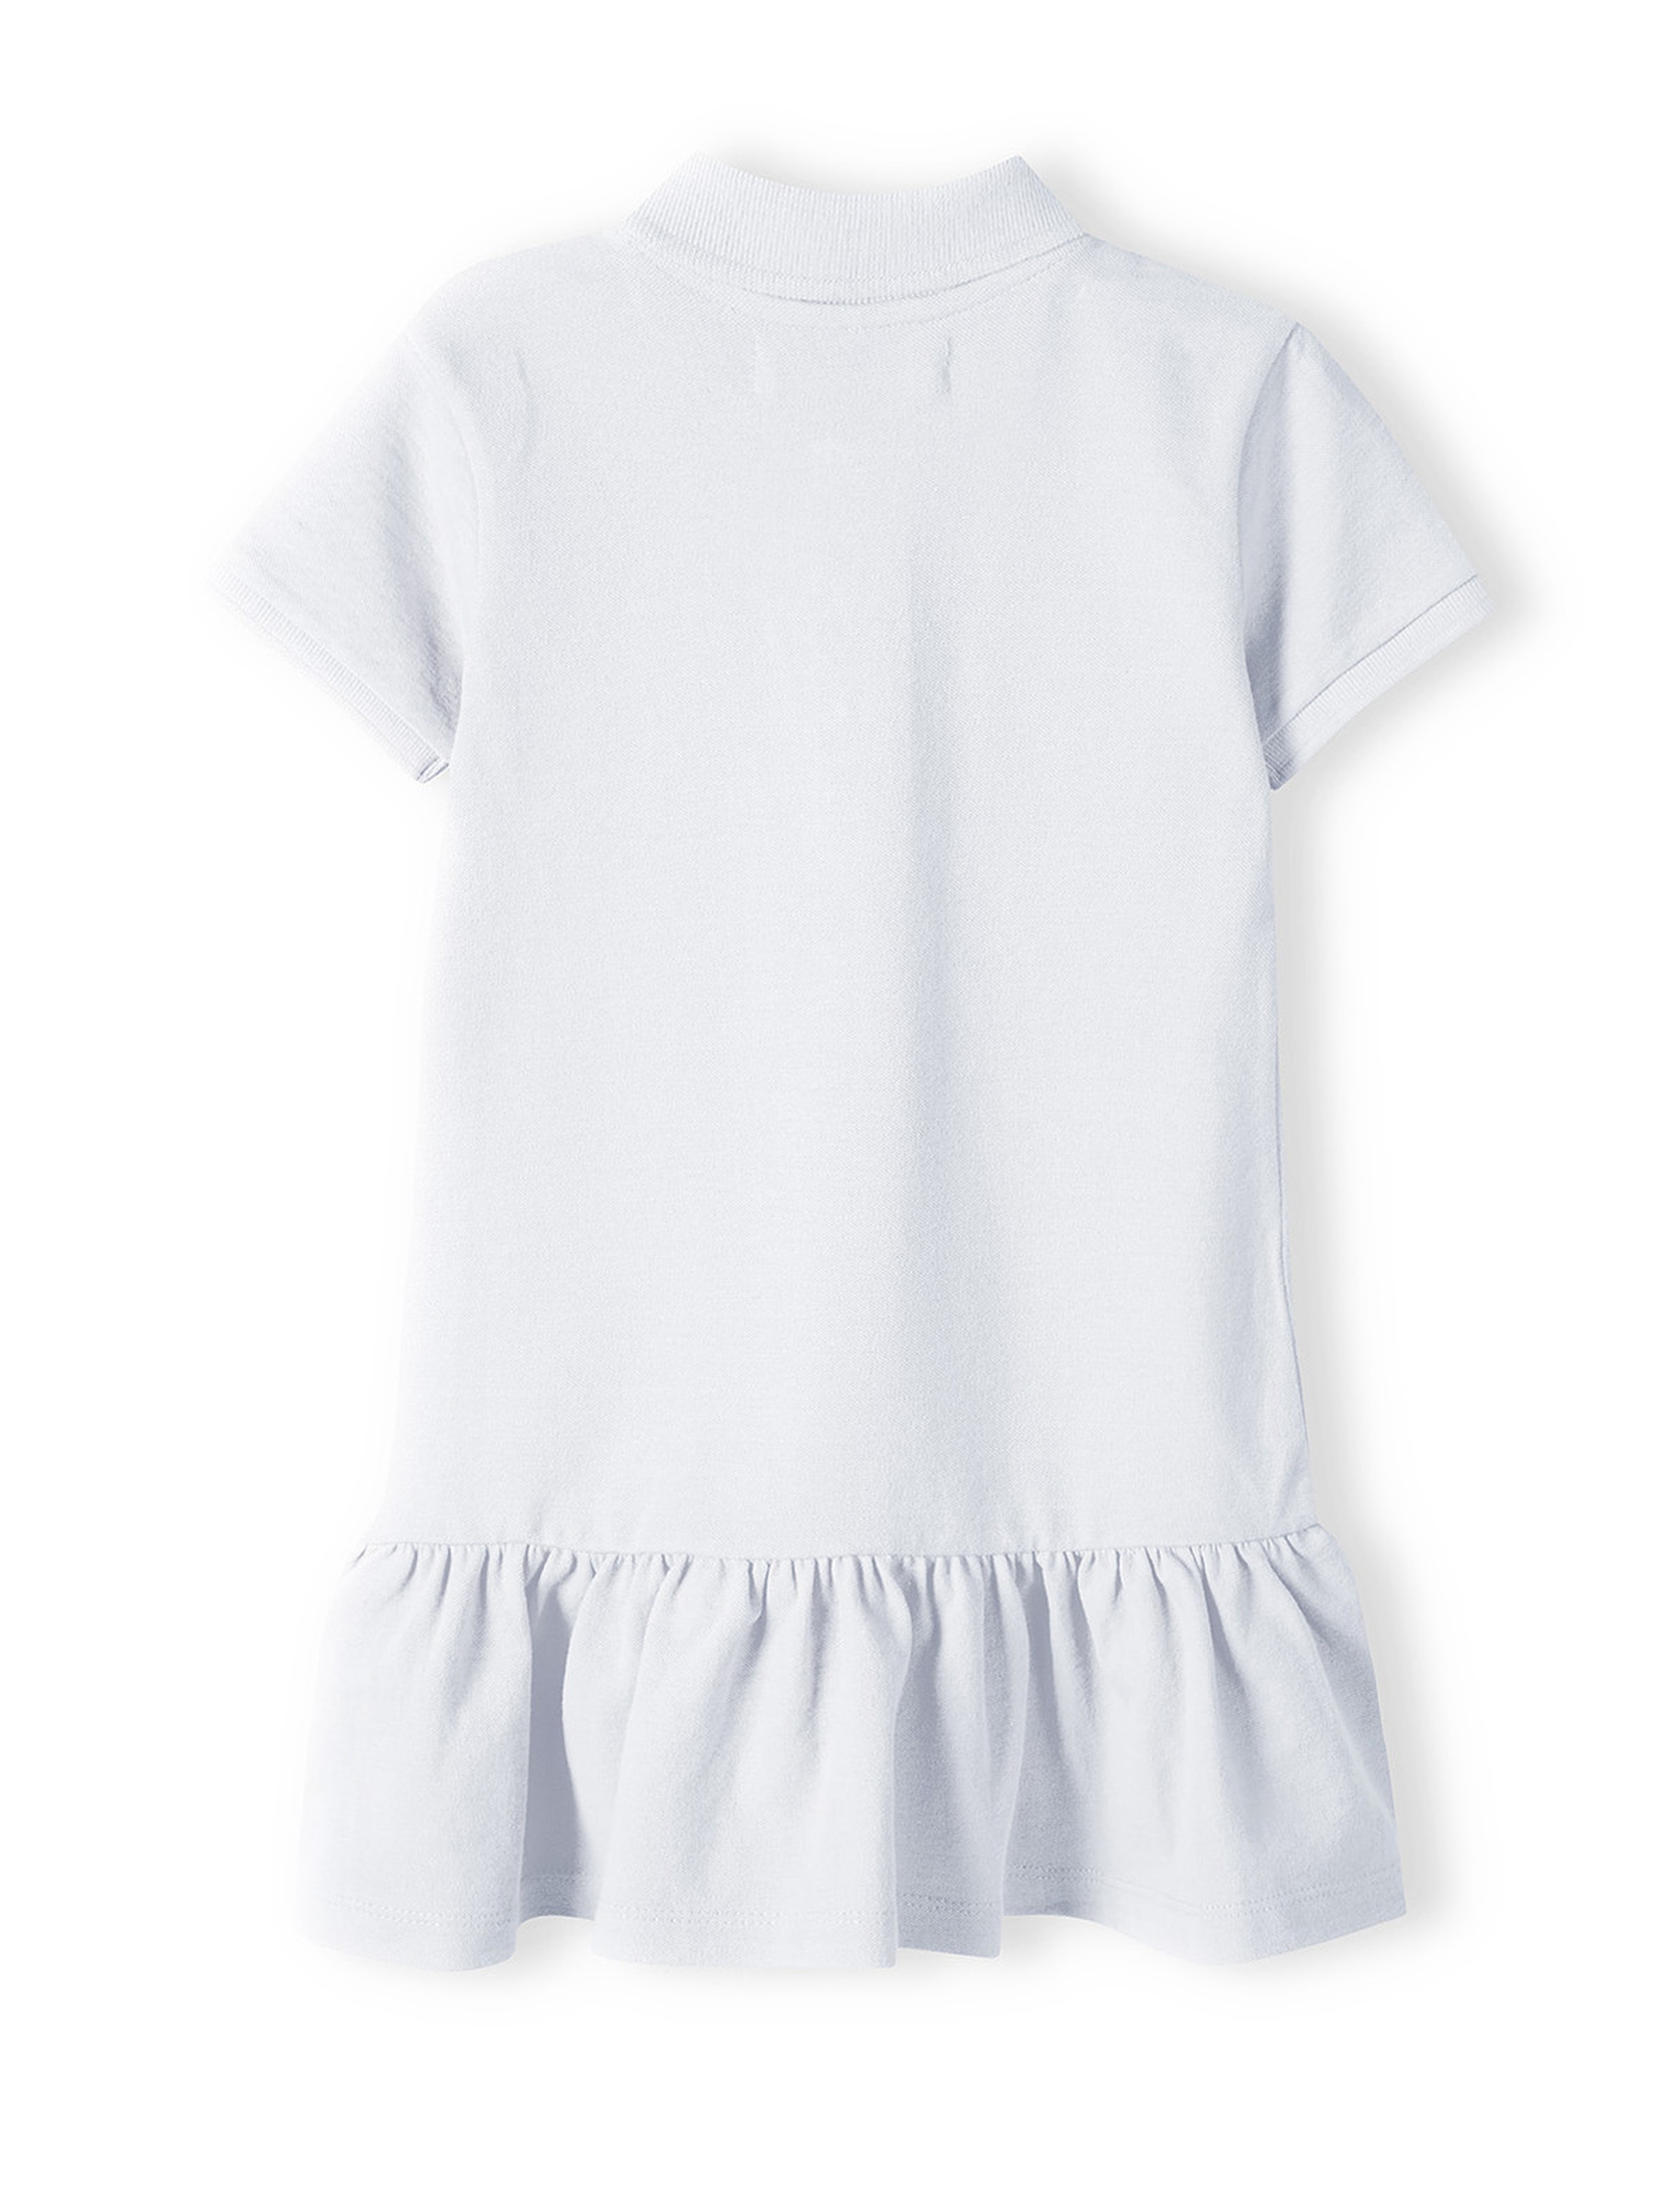 Biała sukienka polo z krókim rękawem dla niemowlaka